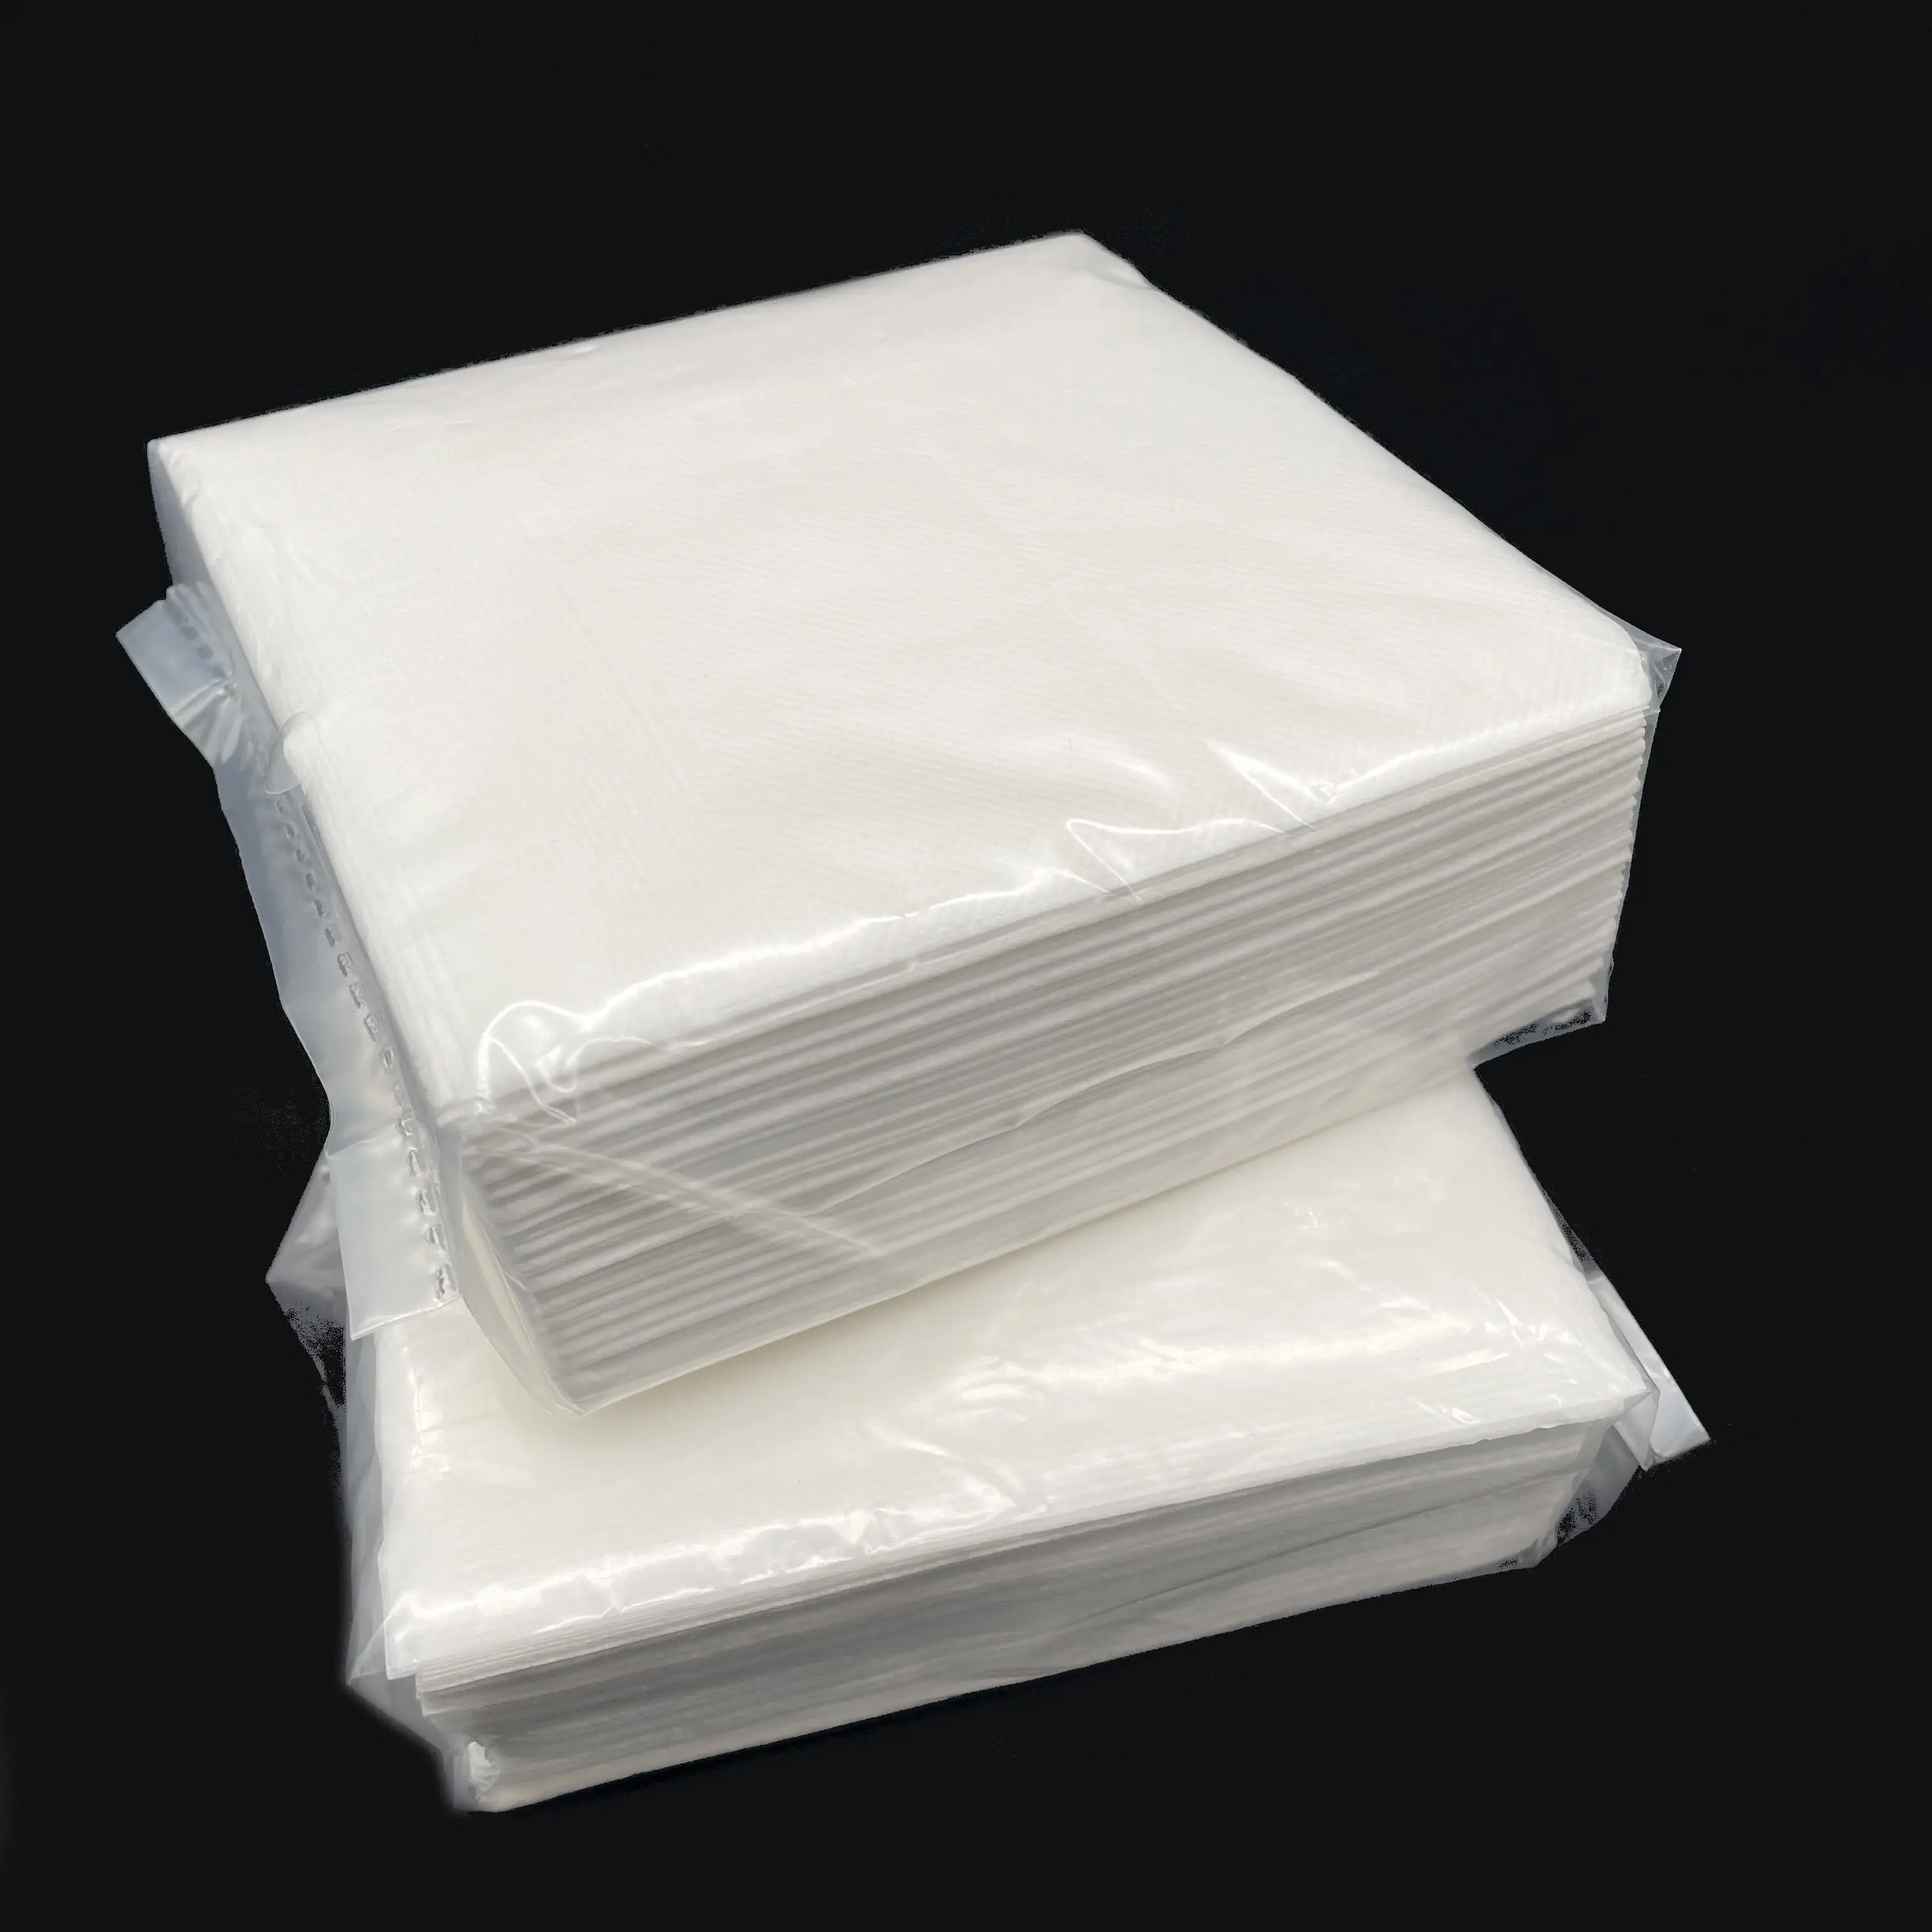 QINGSHE थोक फैक्टरी कस्टम टिशू पेपर 100 चादरें 1 प्लाई लकड़ी कुंवारी लुगदी 1/4 गुना बार कॉकटेल नैपकिन कागज तौलिया नैपकिन